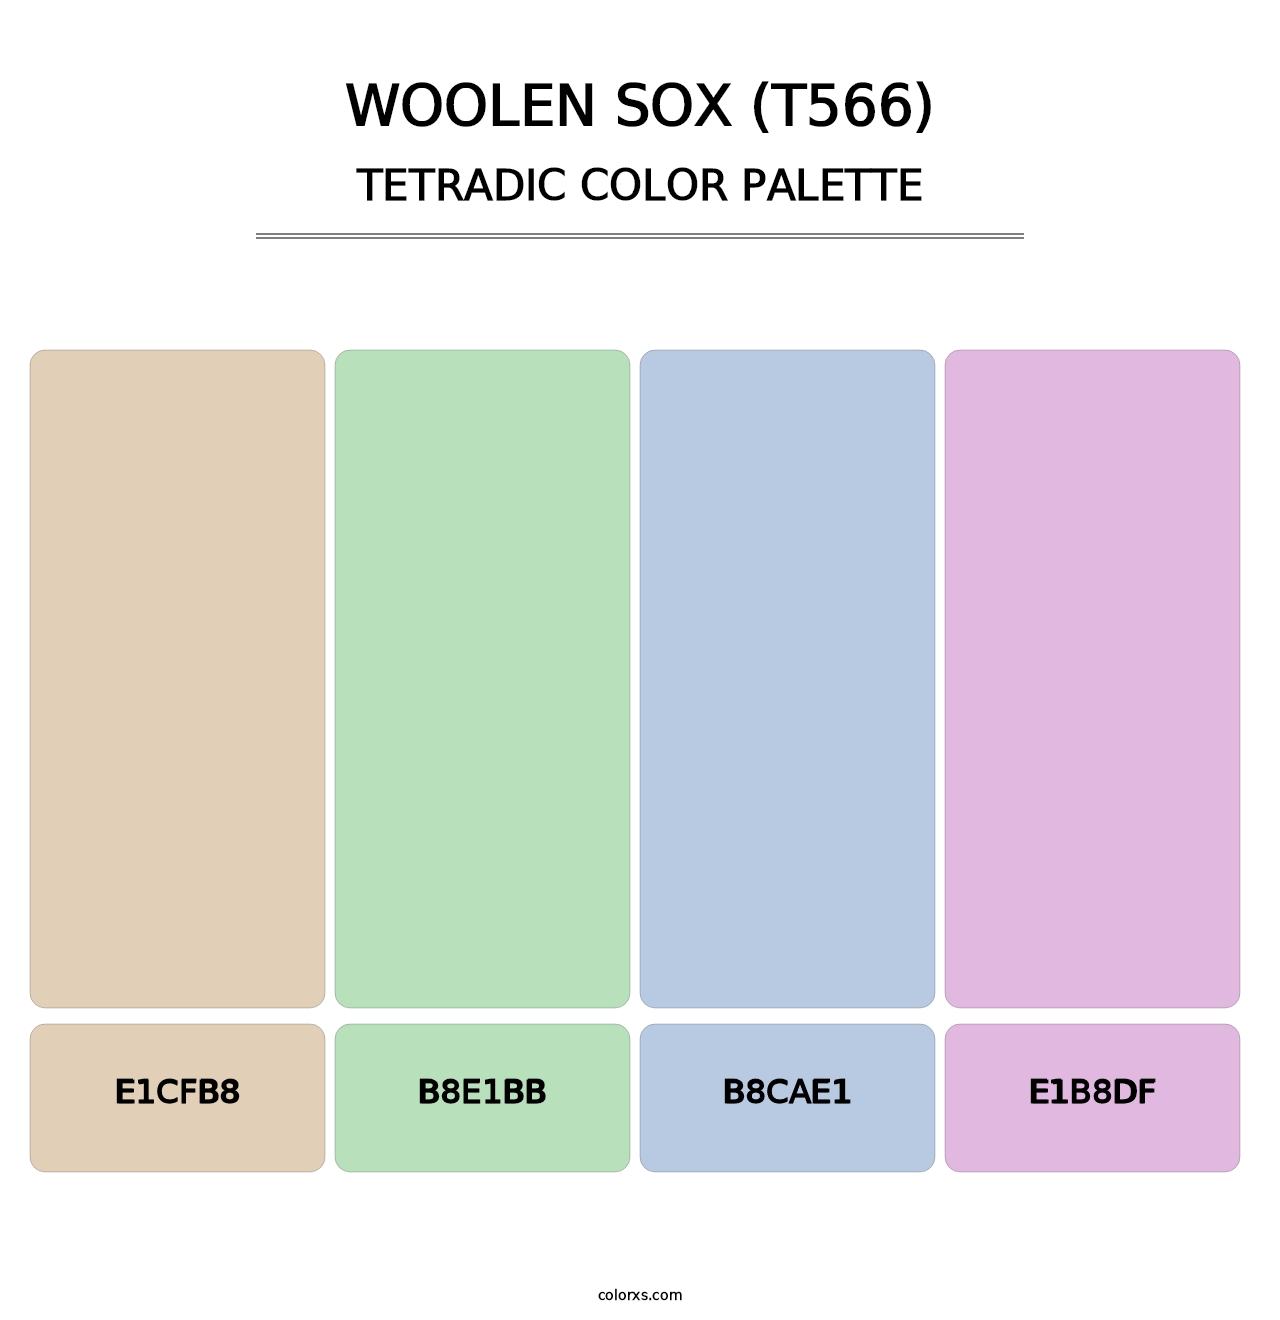 Woolen Sox (T566) - Tetradic Color Palette